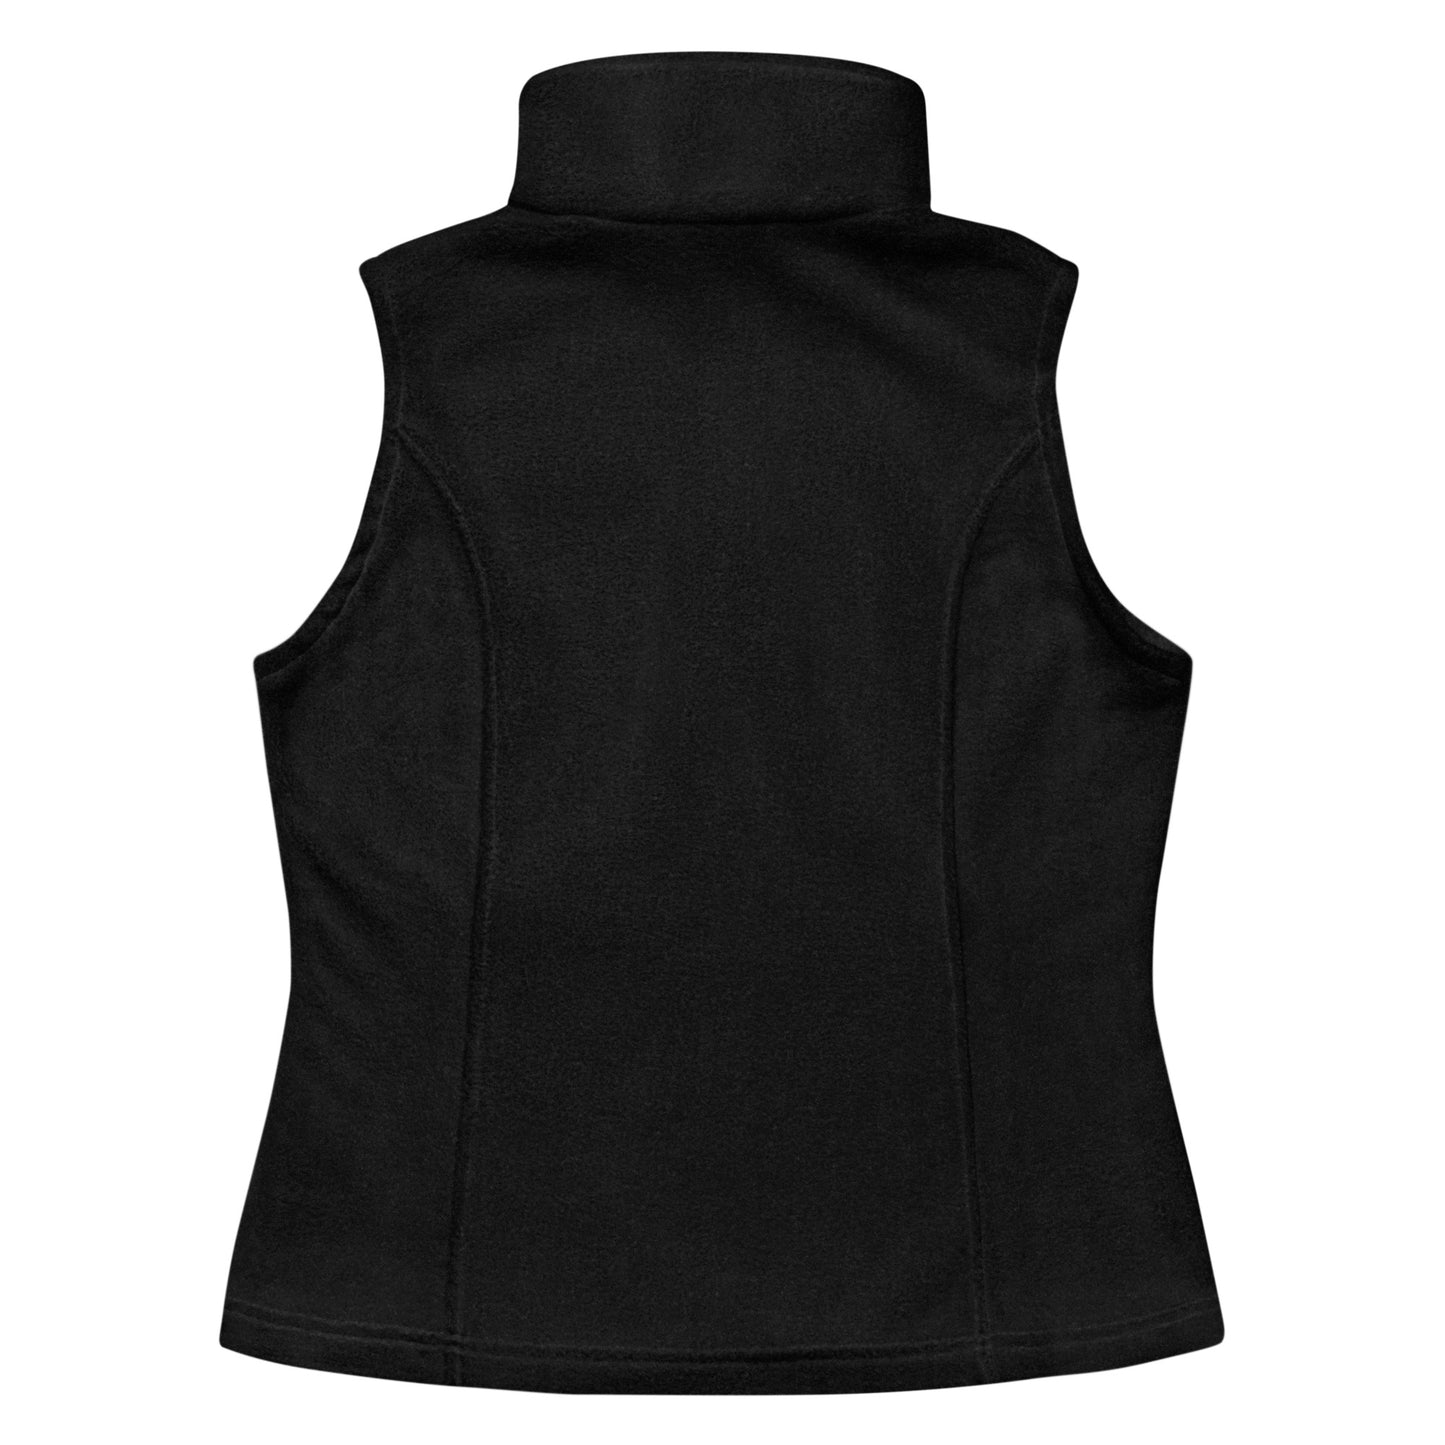 Logo'd Women’s Columbia fleece vest